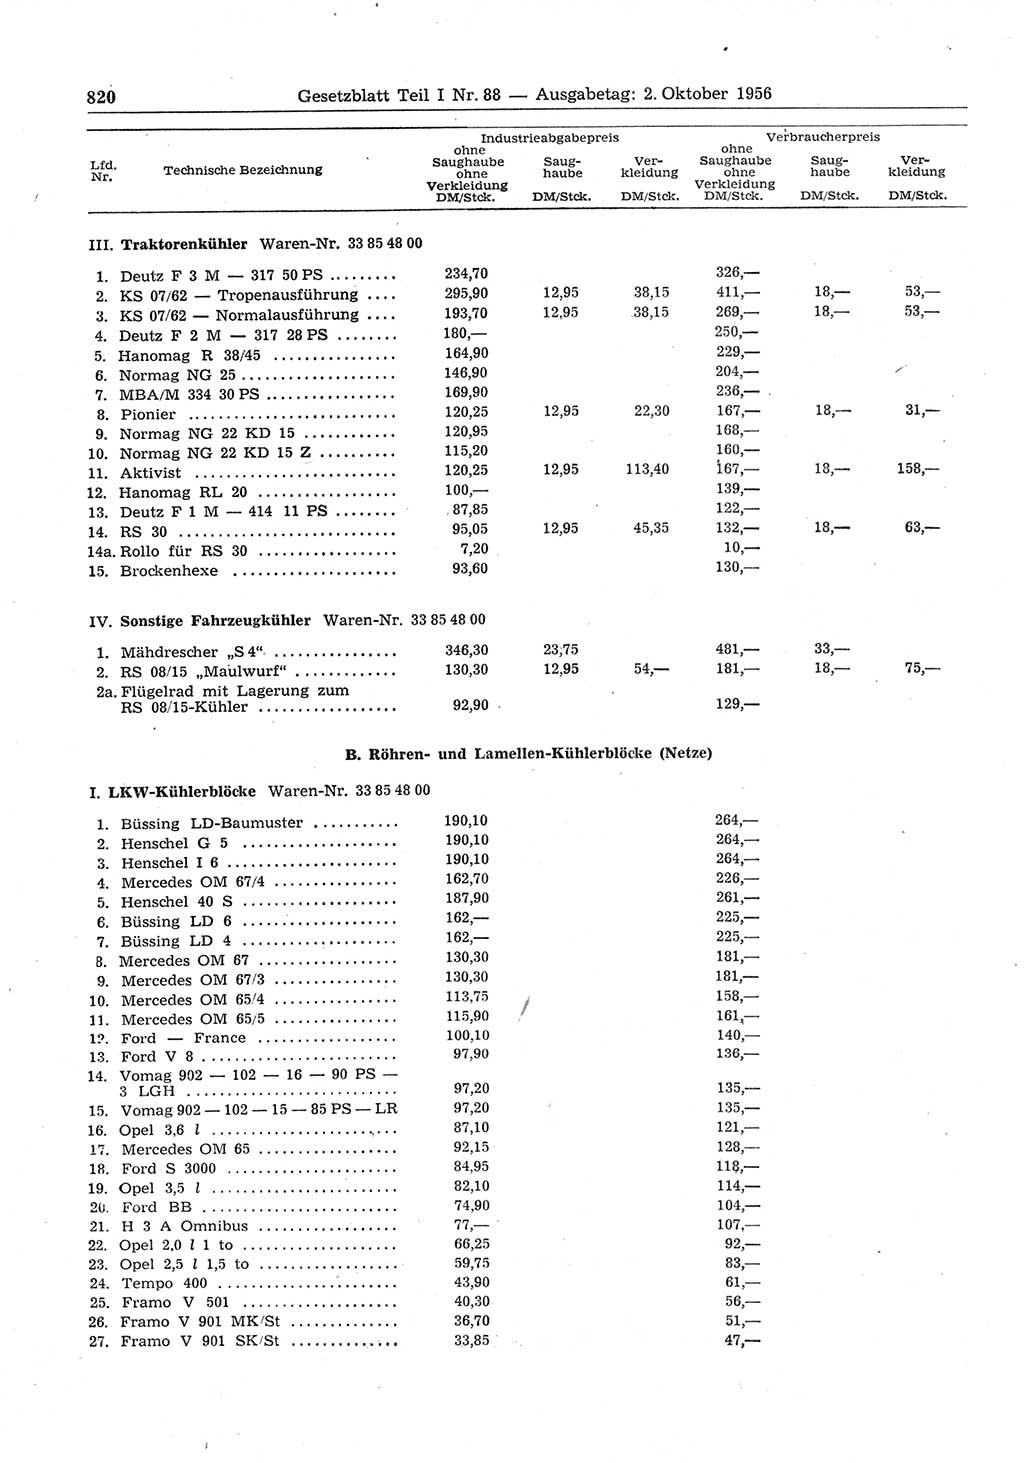 Gesetzblatt (GBl.) der Deutschen Demokratischen Republik (DDR) Teil Ⅰ 1956, Seite 820 (GBl. DDR Ⅰ 1956, S. 820)